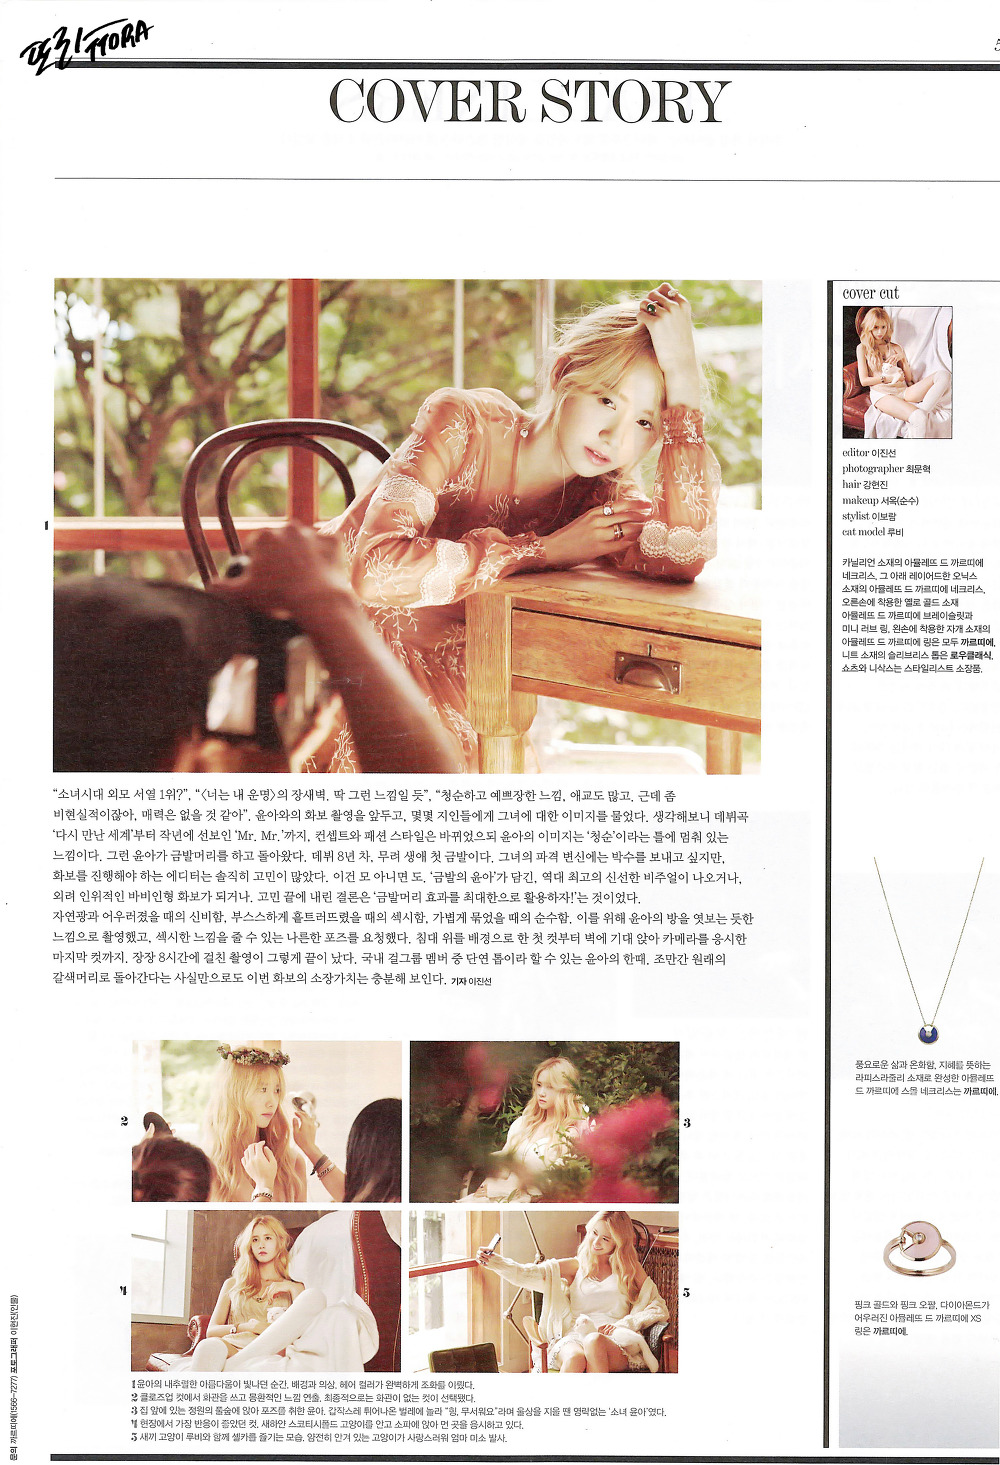 [PIC][05-08-2015]YoonA xuất hiện trên ấn phẩm tháng 9 của tạp chí "HIGH CUT" 2623D54355C88C4707F862